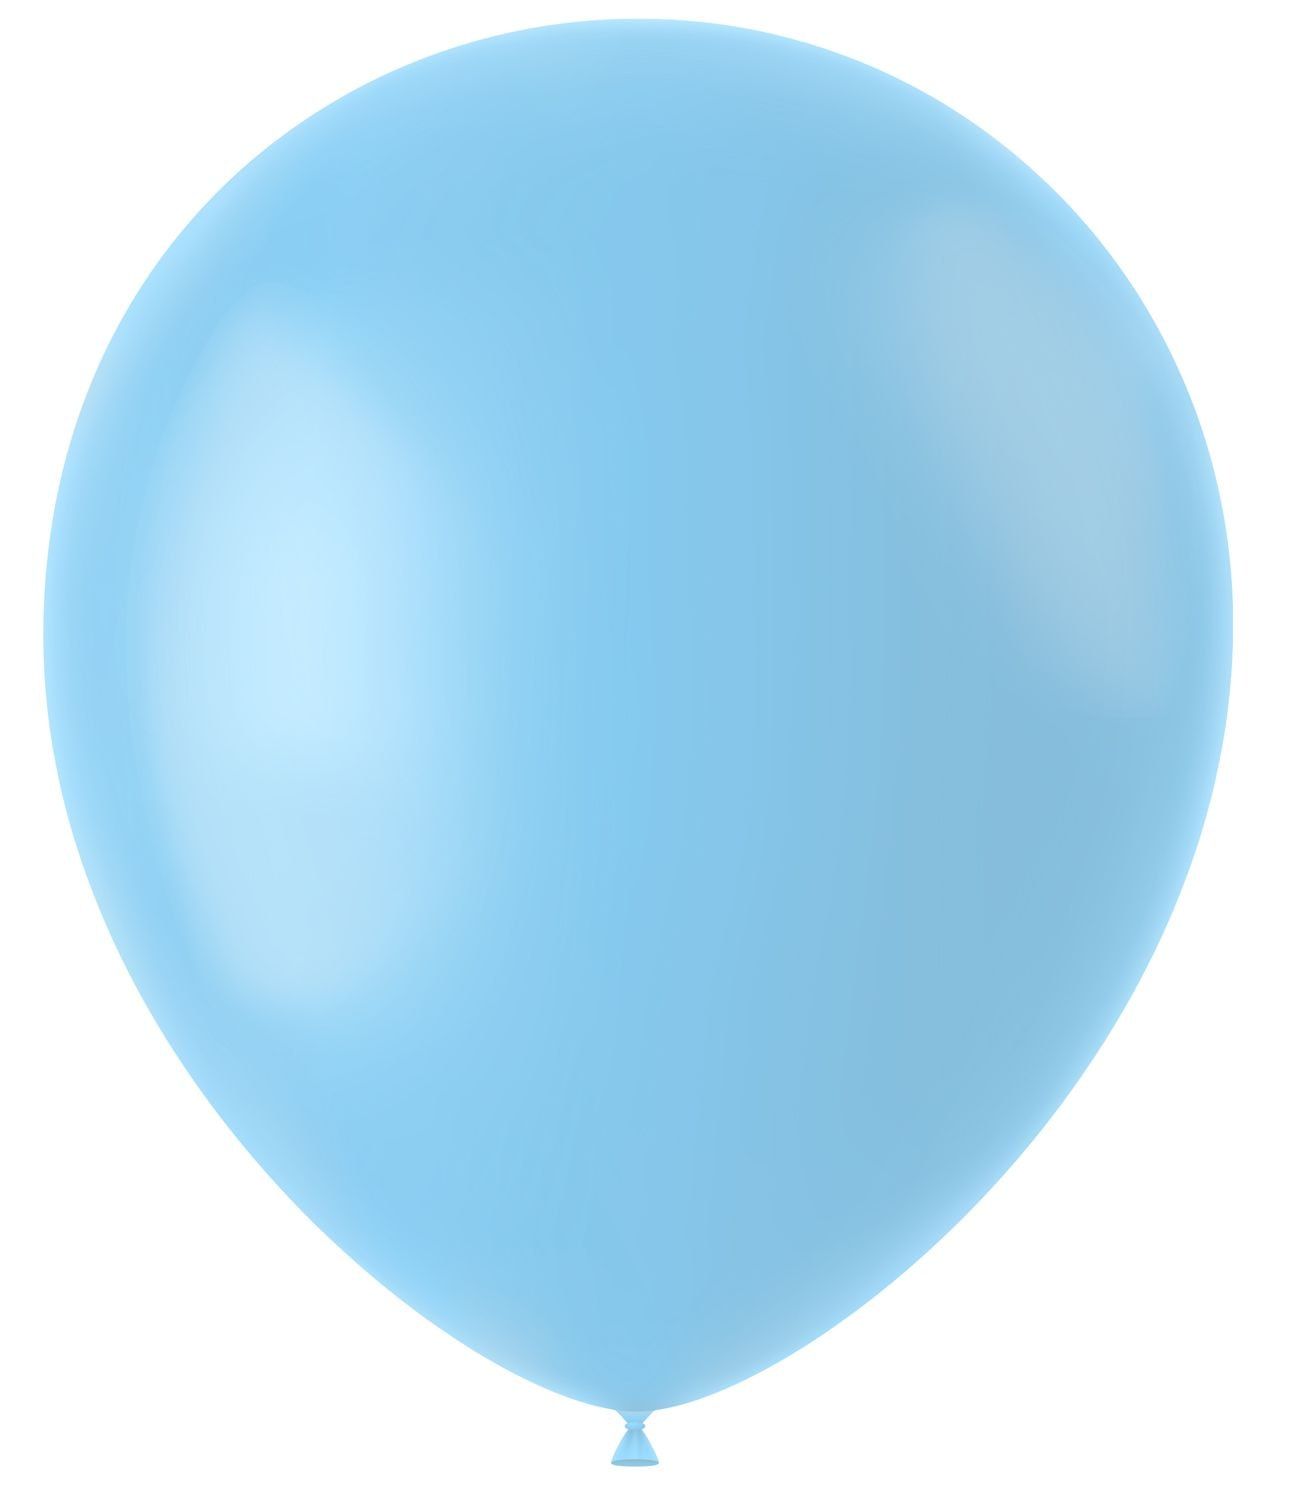 100 ballonnen powder blue mat 33cm